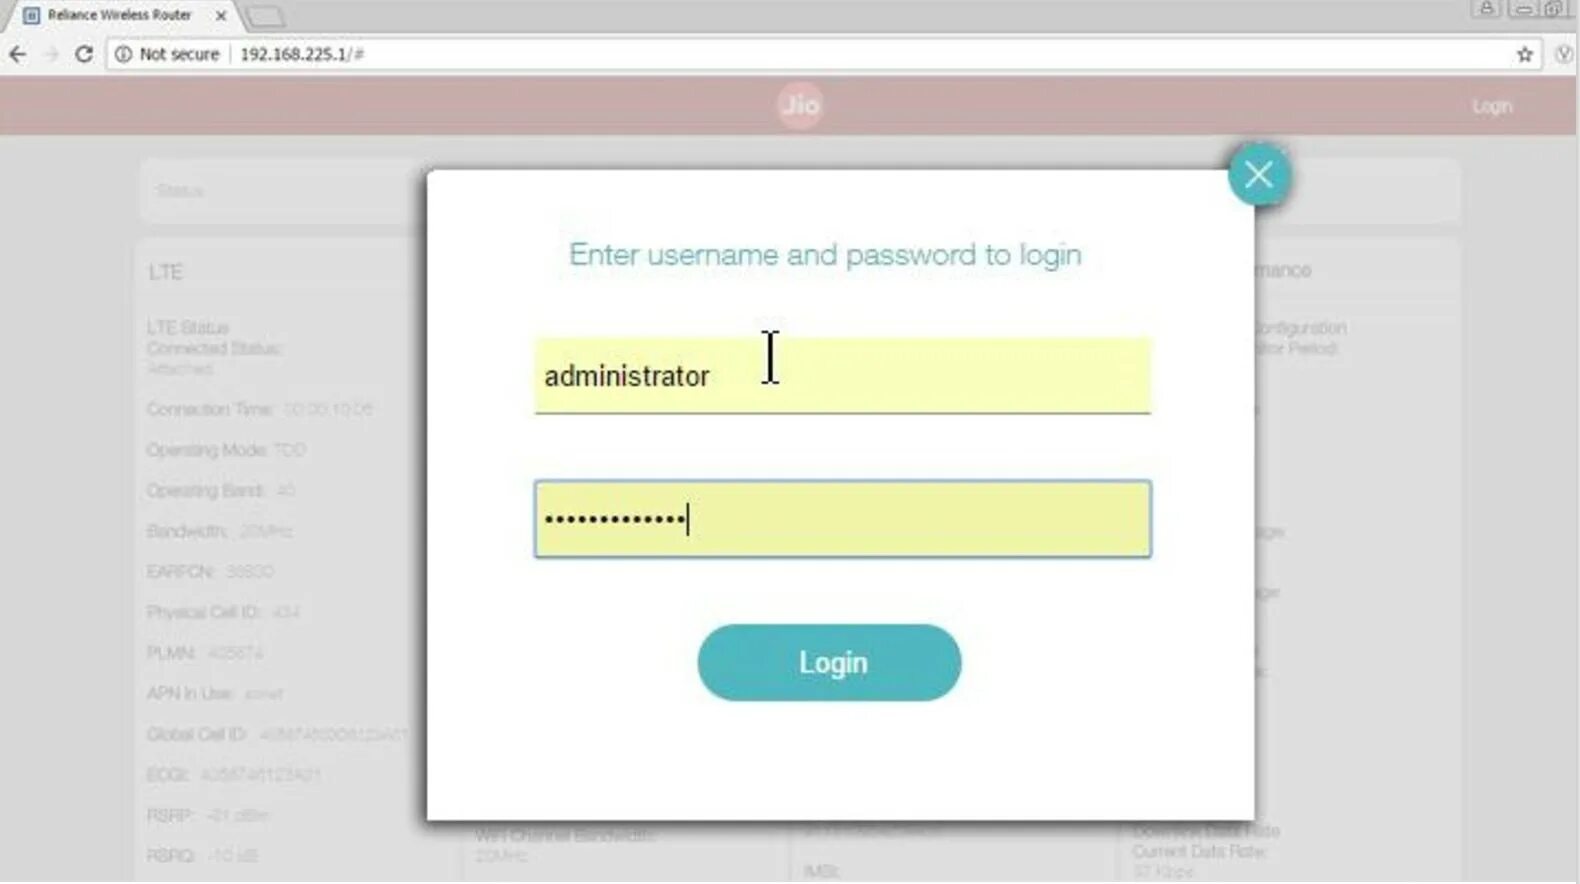 Get username password. Change password. Enter login and password. WIFI login password. Change local username.